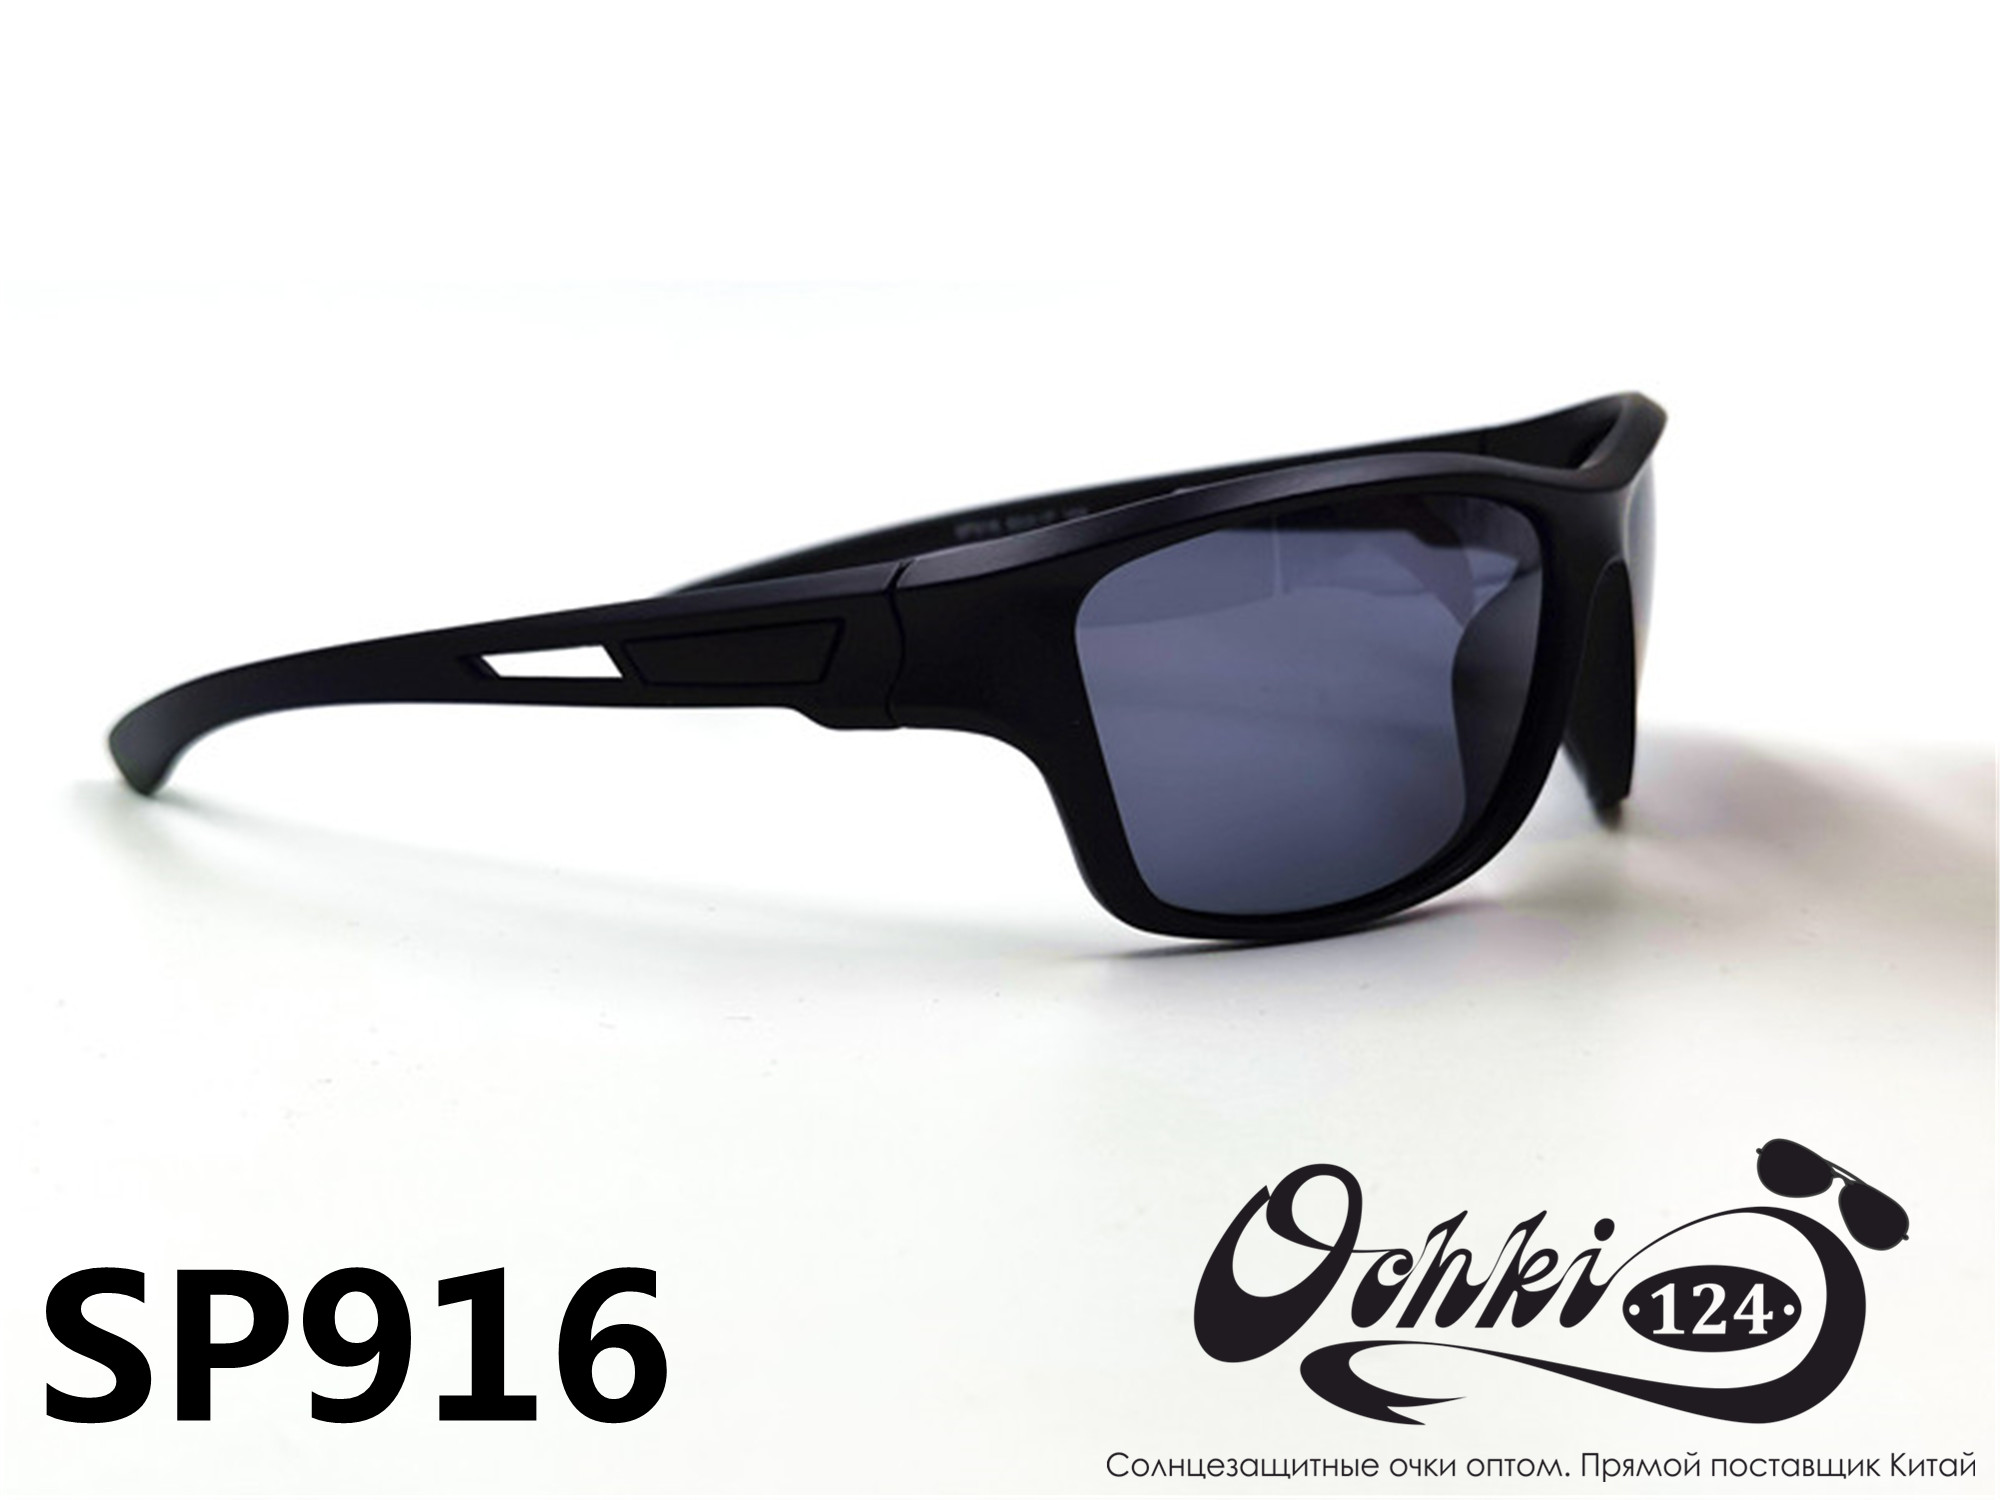  Солнцезащитные очки картинка 2022 Мужские спорт Поляризованные Materice PS916-2 